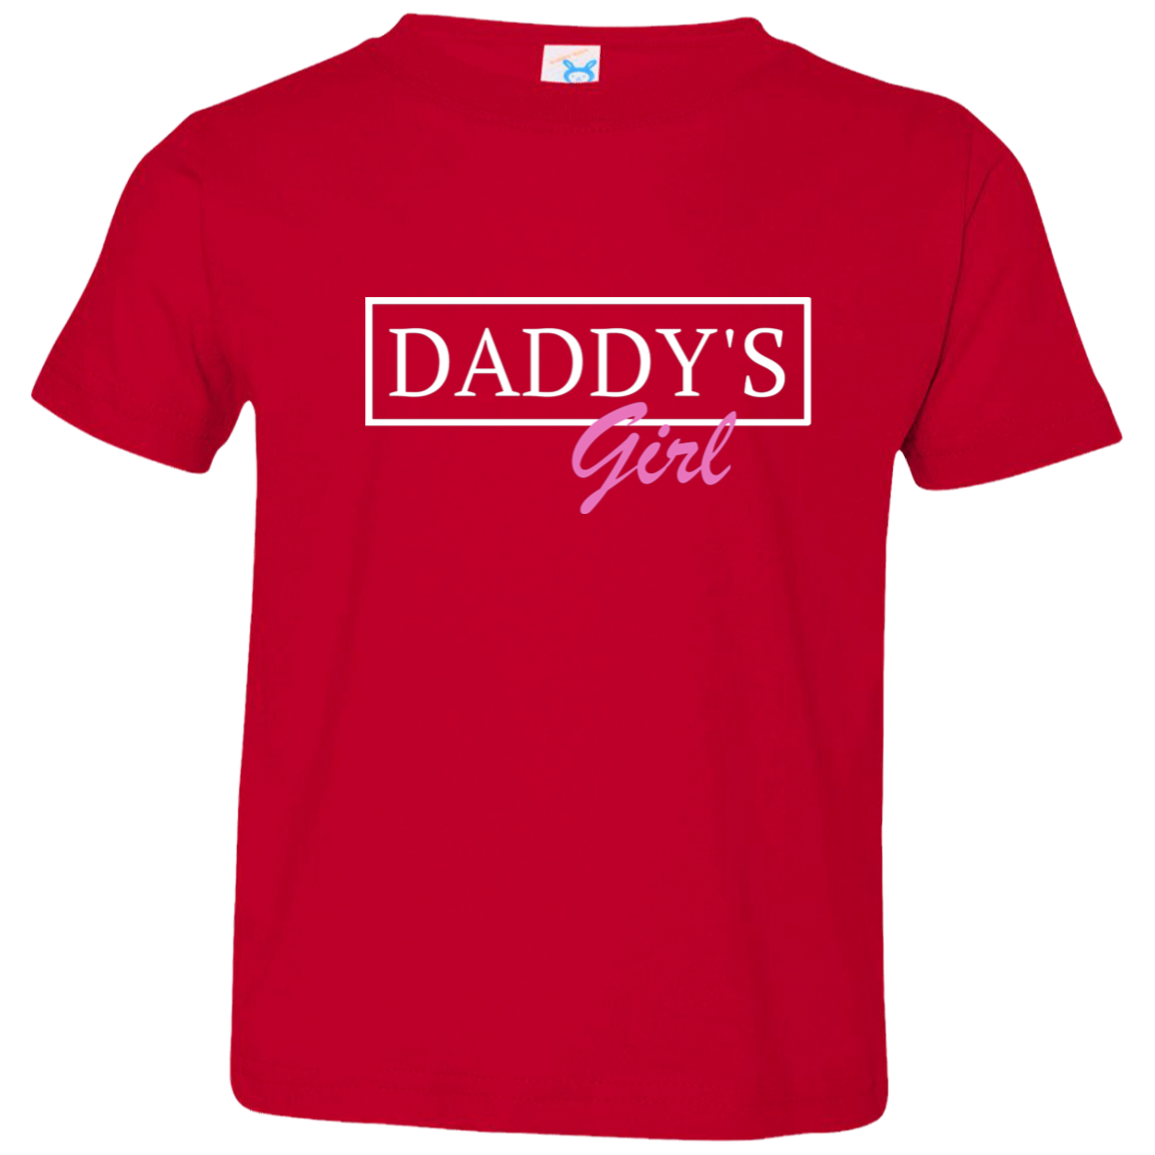 Toddler Jersey T-Shirt - "Daddys Girl" Matching Shirt